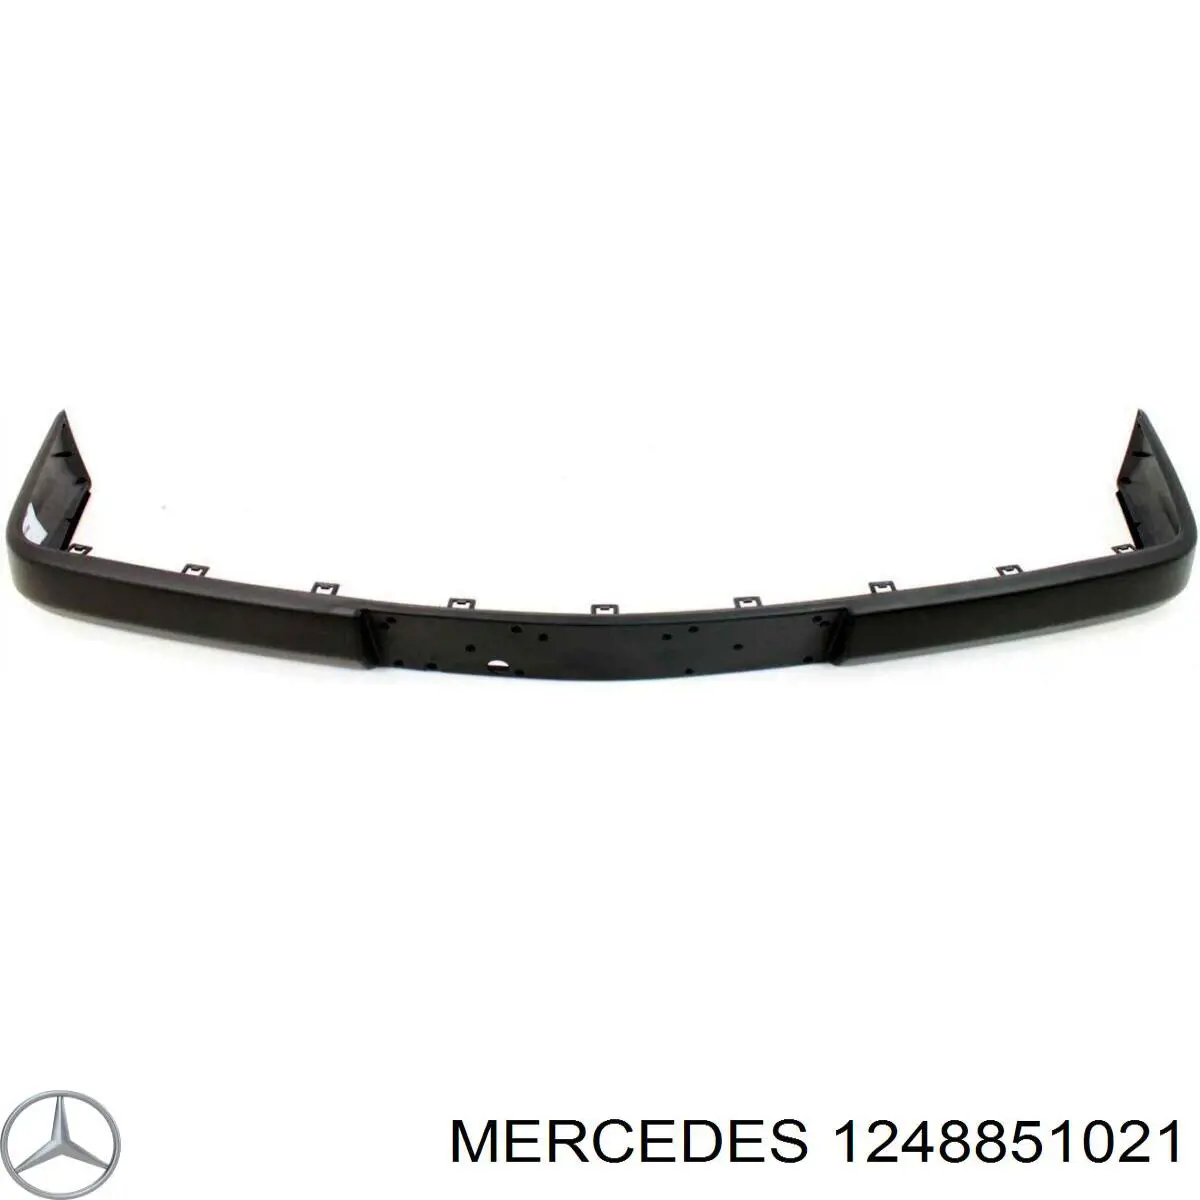 A1248851021 Mercedes listón embellecedor/protector, parachoques delantero central